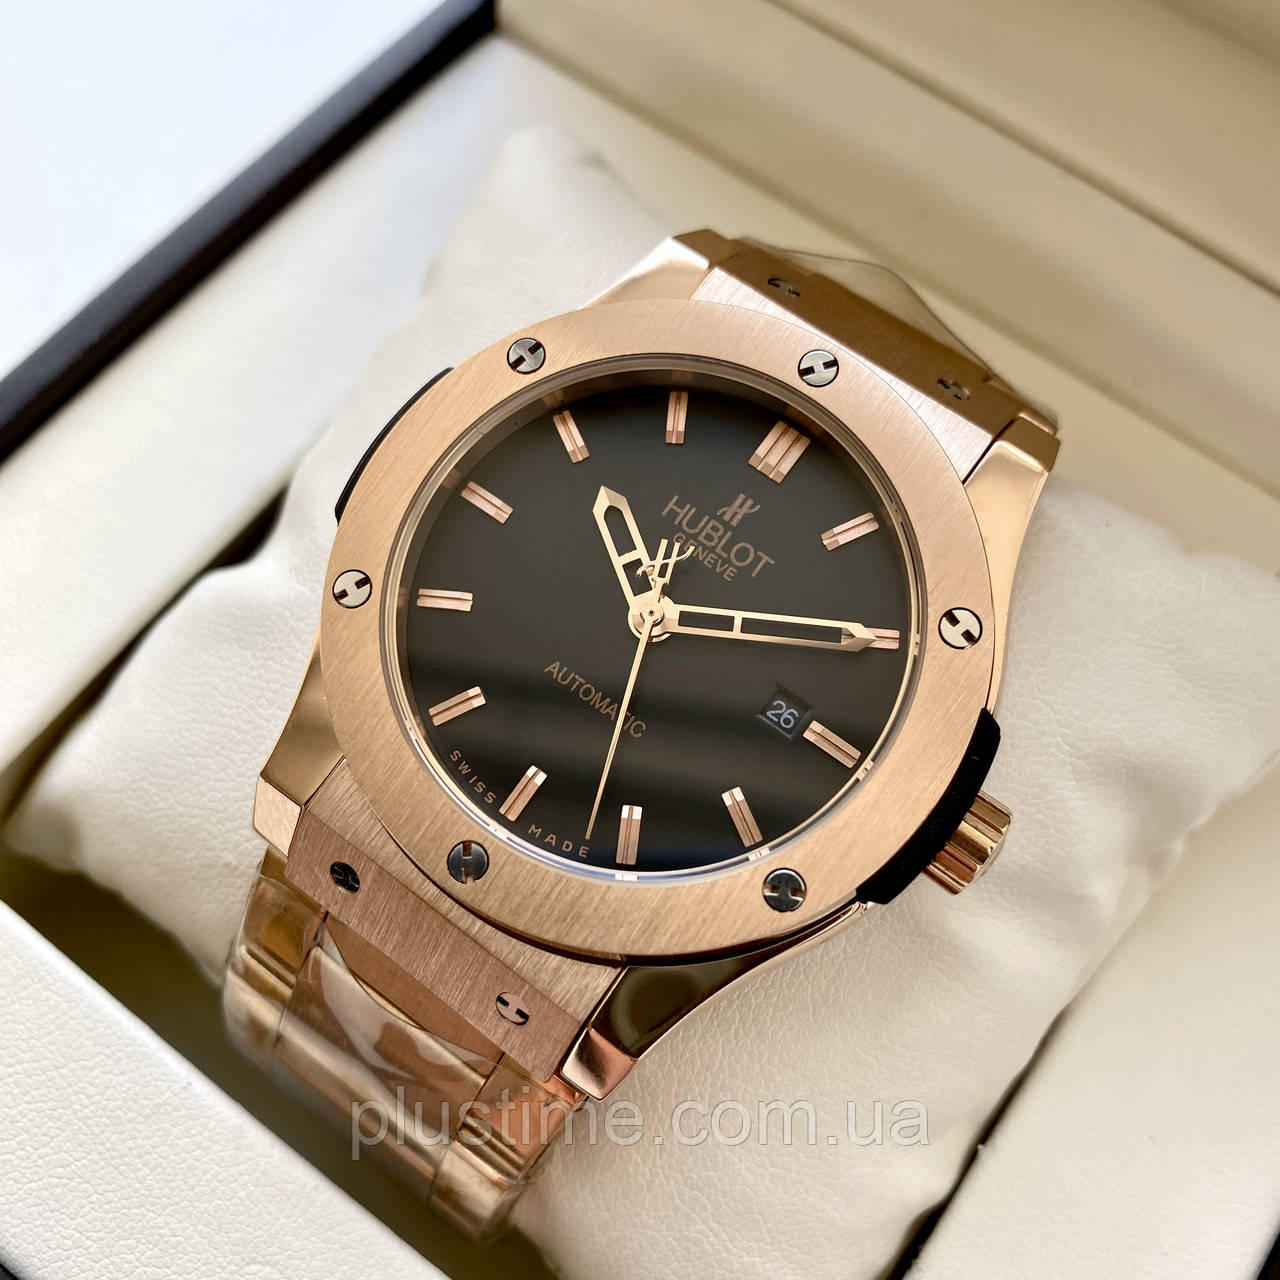 Механічний годинник Hublot Fusion Gold ексклюзивний чоловічий наручний із календарем на сталевому ремінці